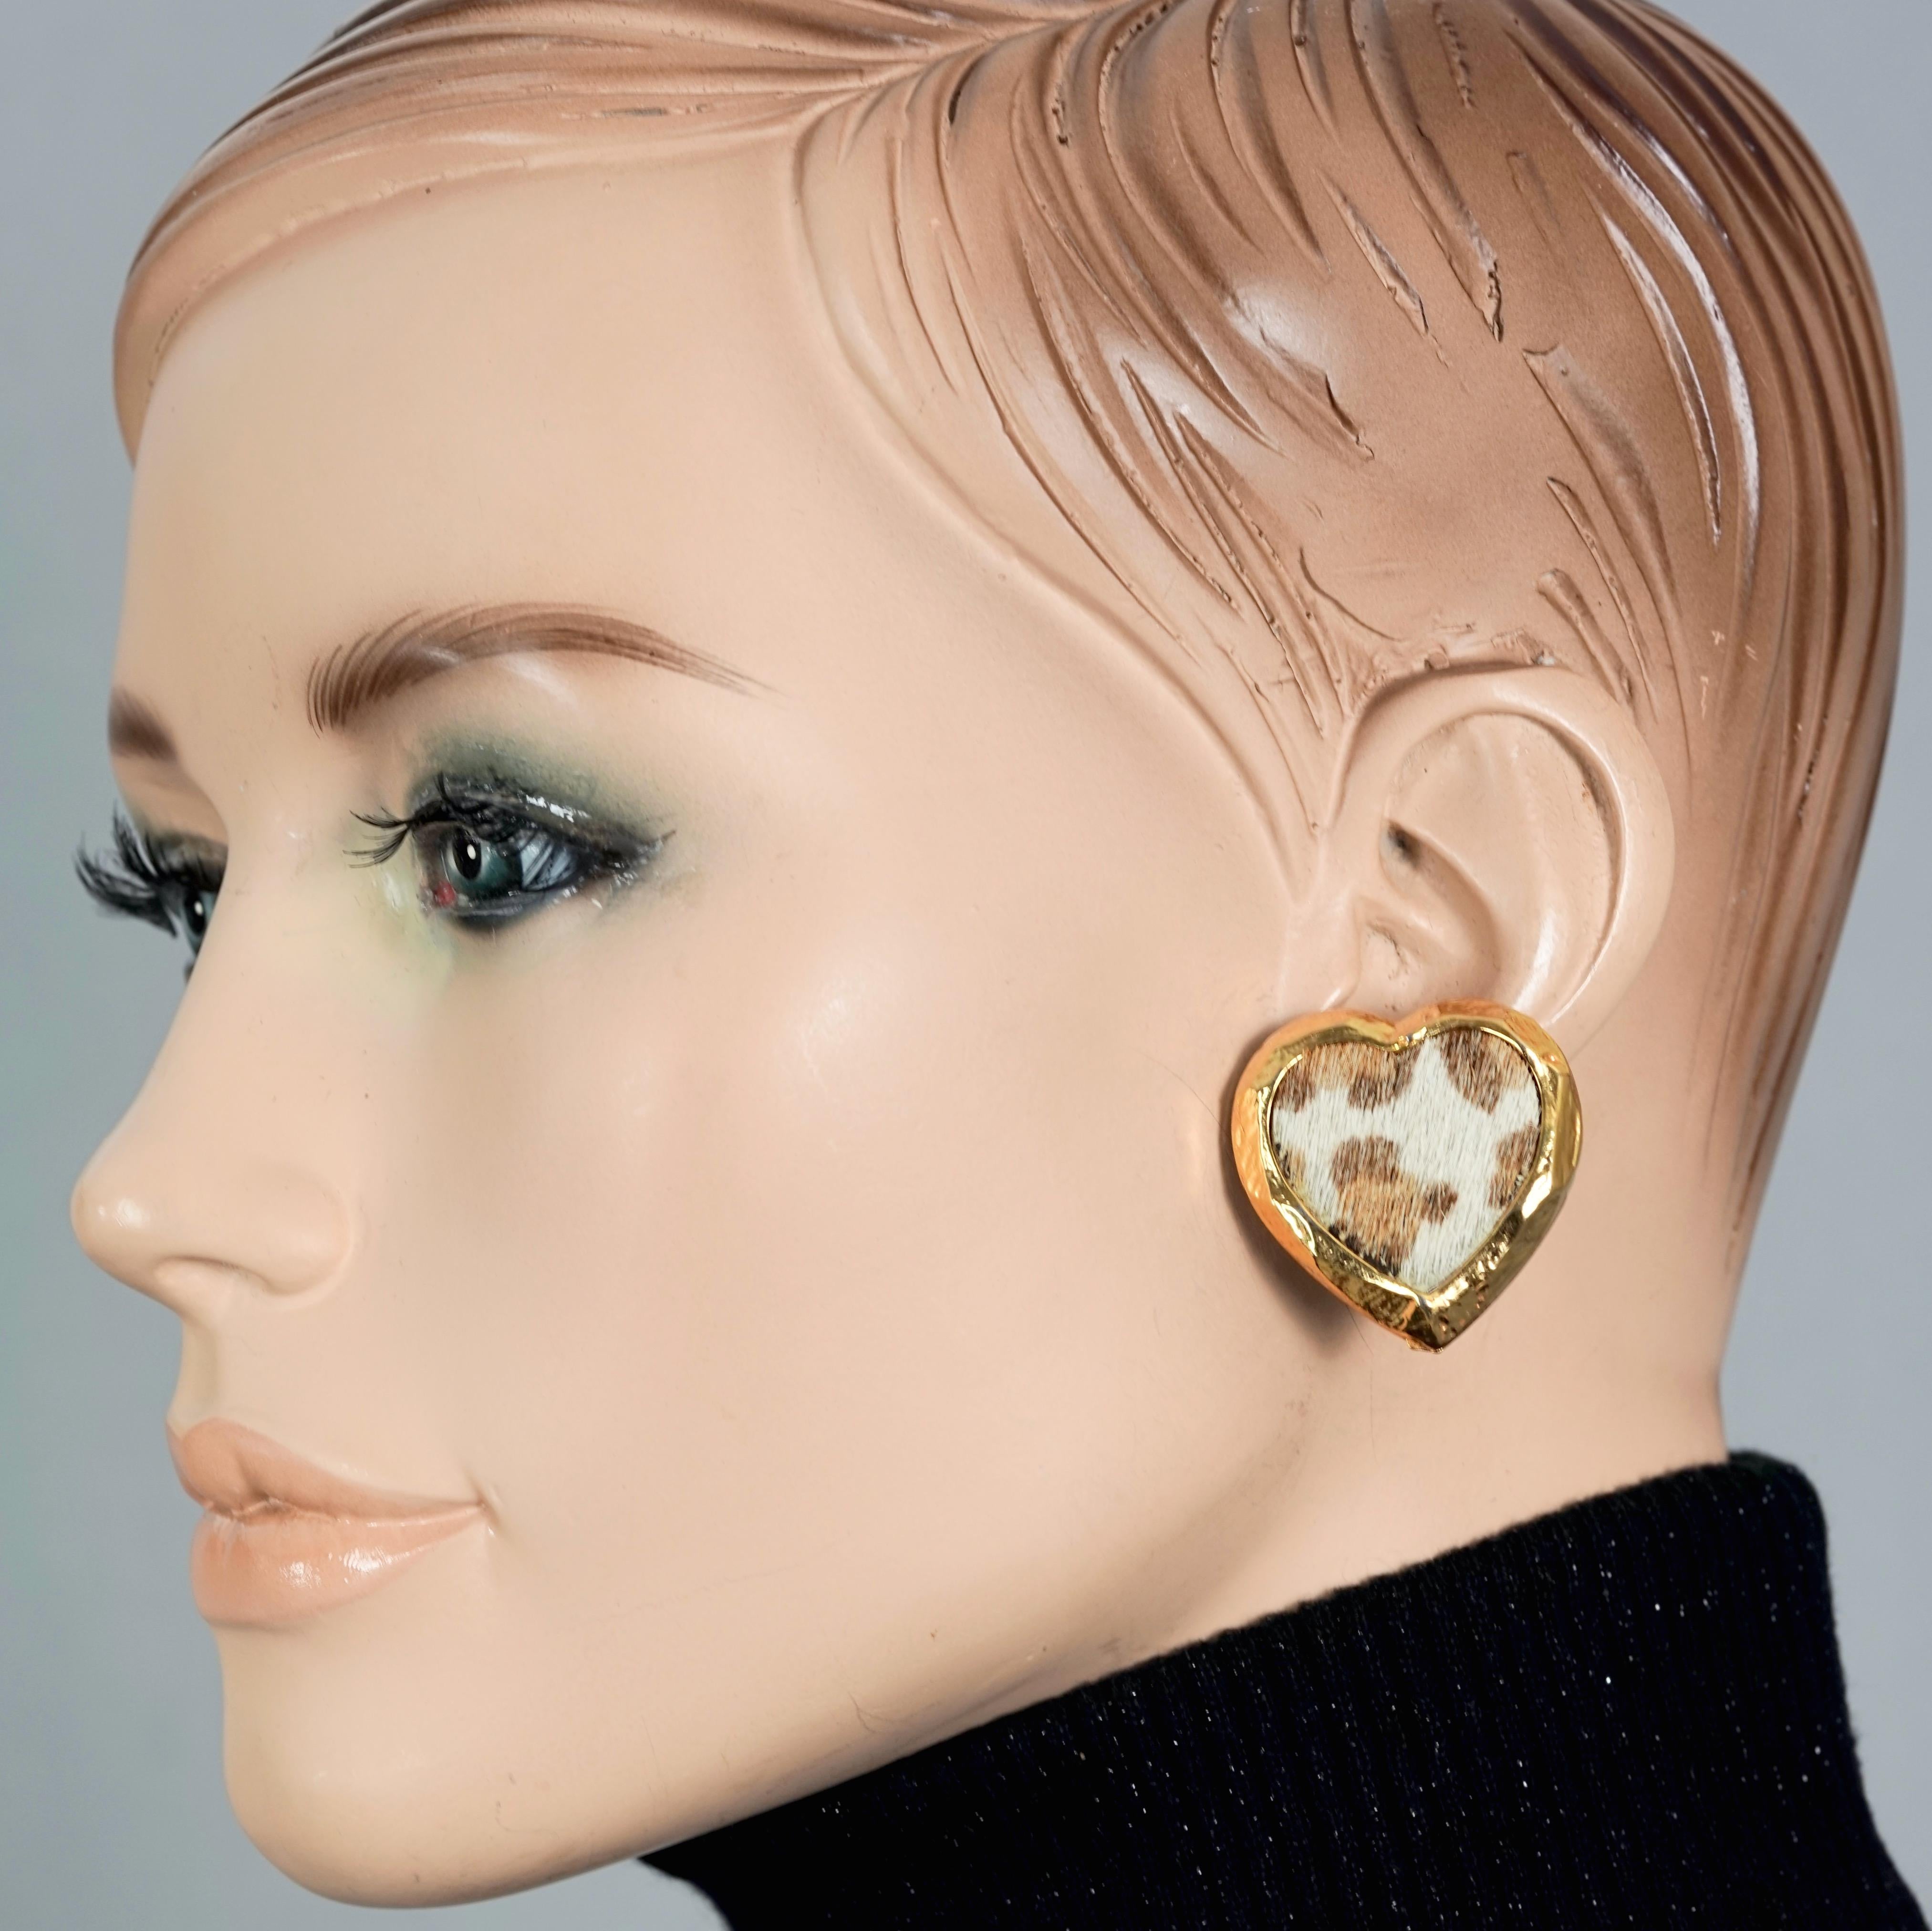 EDOUARD RAMBAUD Boucles d'oreilles vintage cœur en fausse fourrure dorée léopard

Mesures :
Hauteur : 3,4 cm (1,33 pouces)
Largeur : 3,3 cm (1,29 pouces)
Poids par boucle d'oreille : 13 grammes

Caractéristiques :
- 100% Authentique EDOUARD